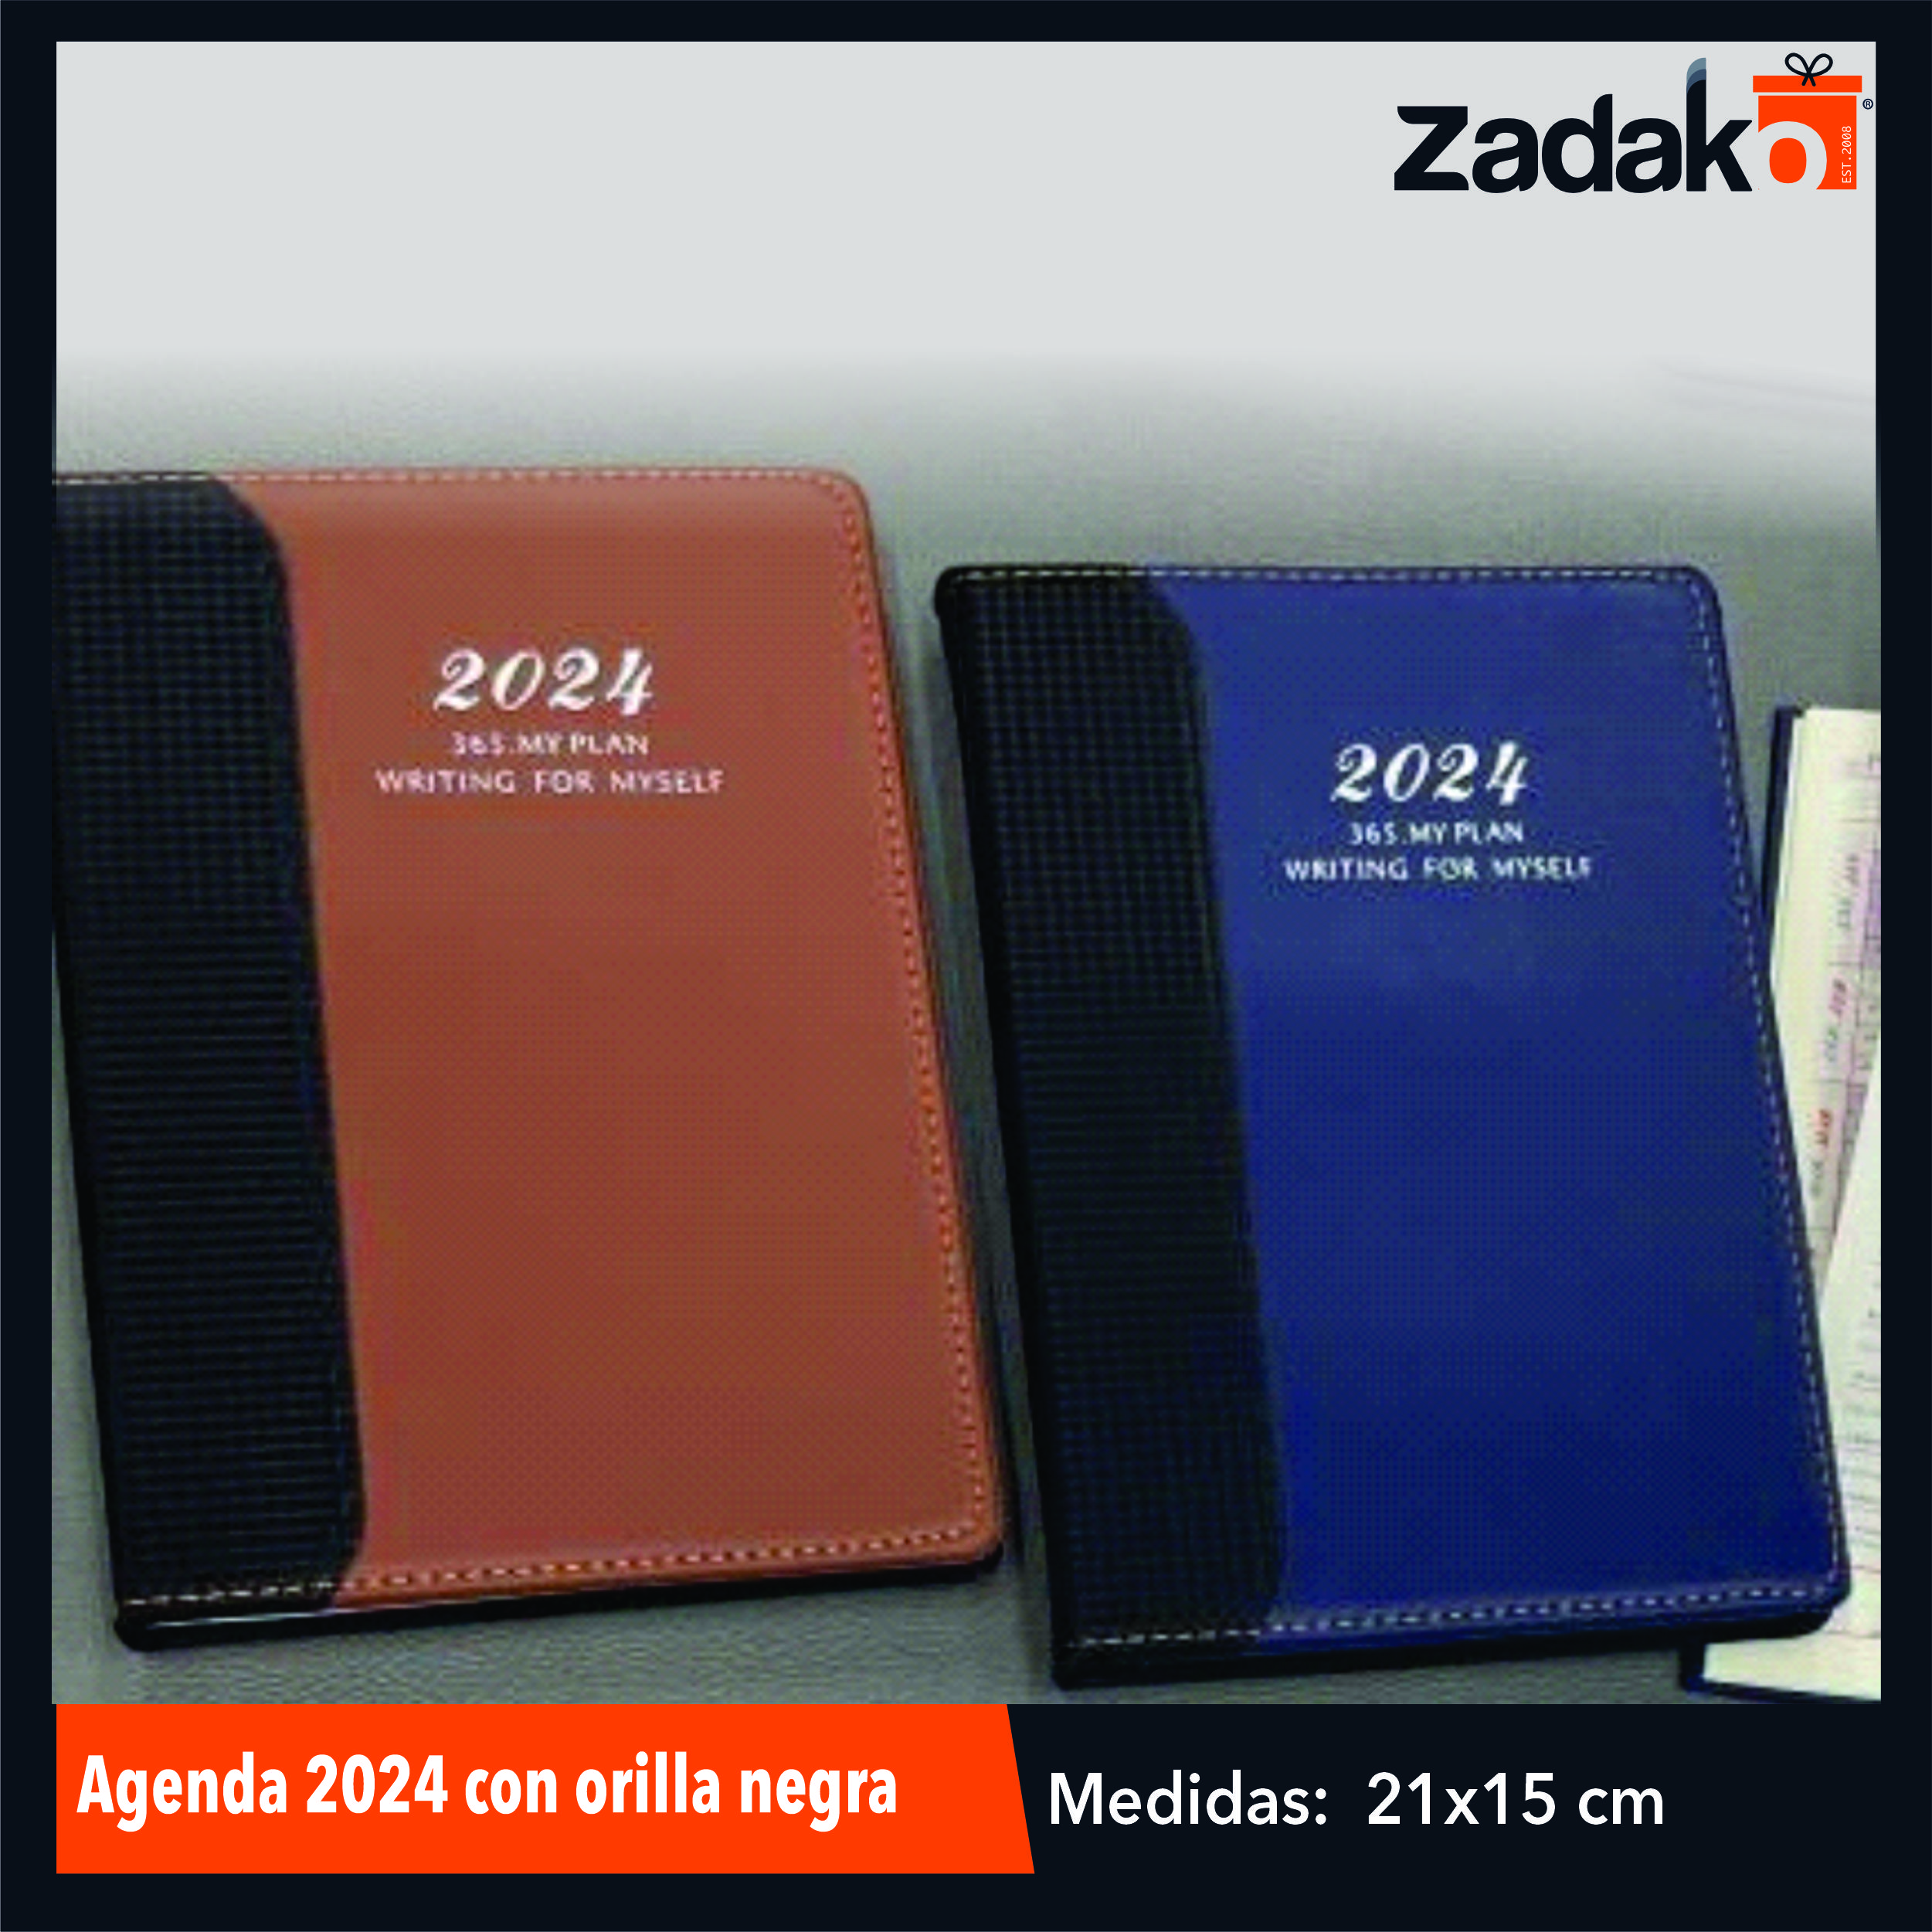 Agendas 2024 - My 365